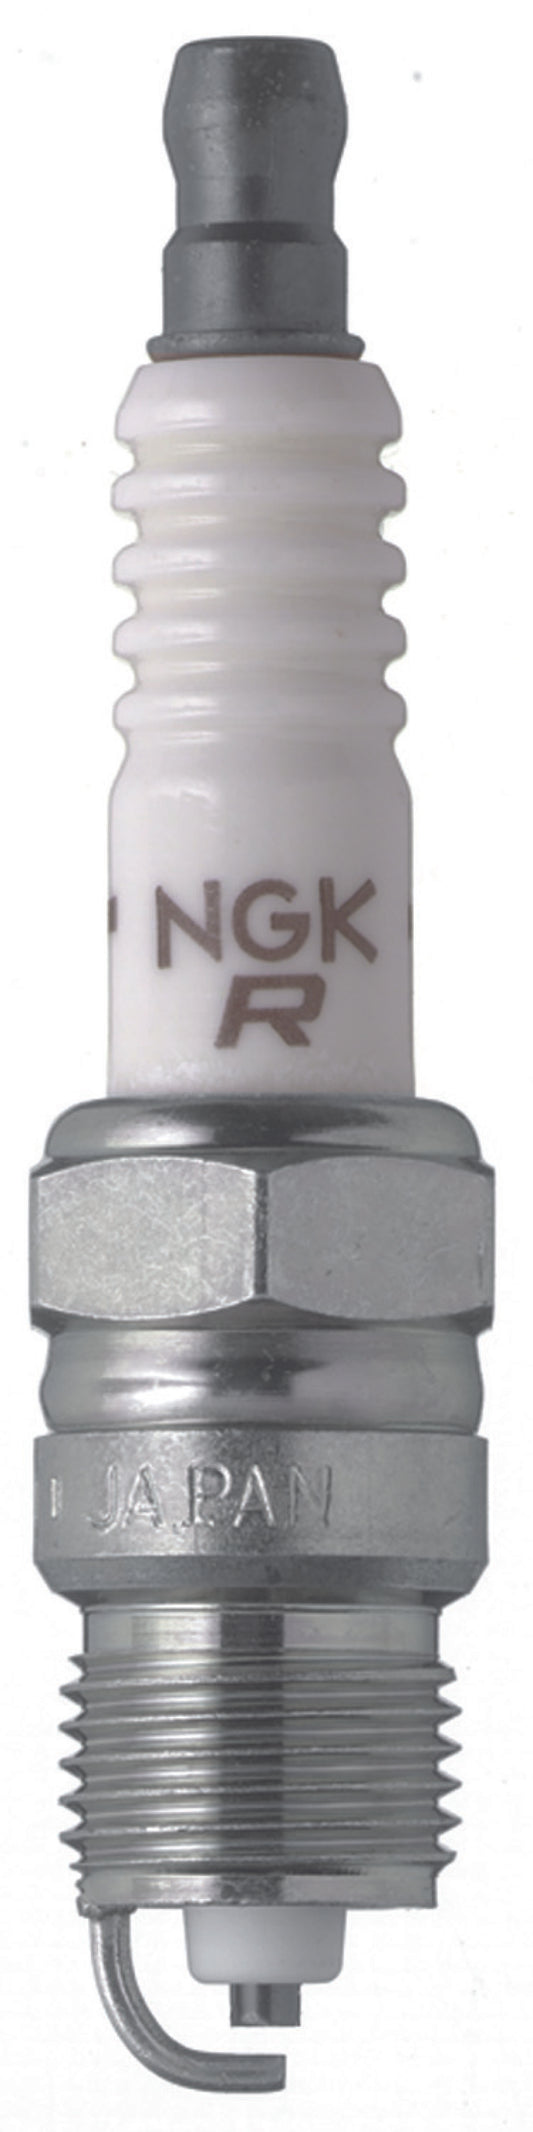 NGK Nickel Spark Plug Box of 4 (UR6)